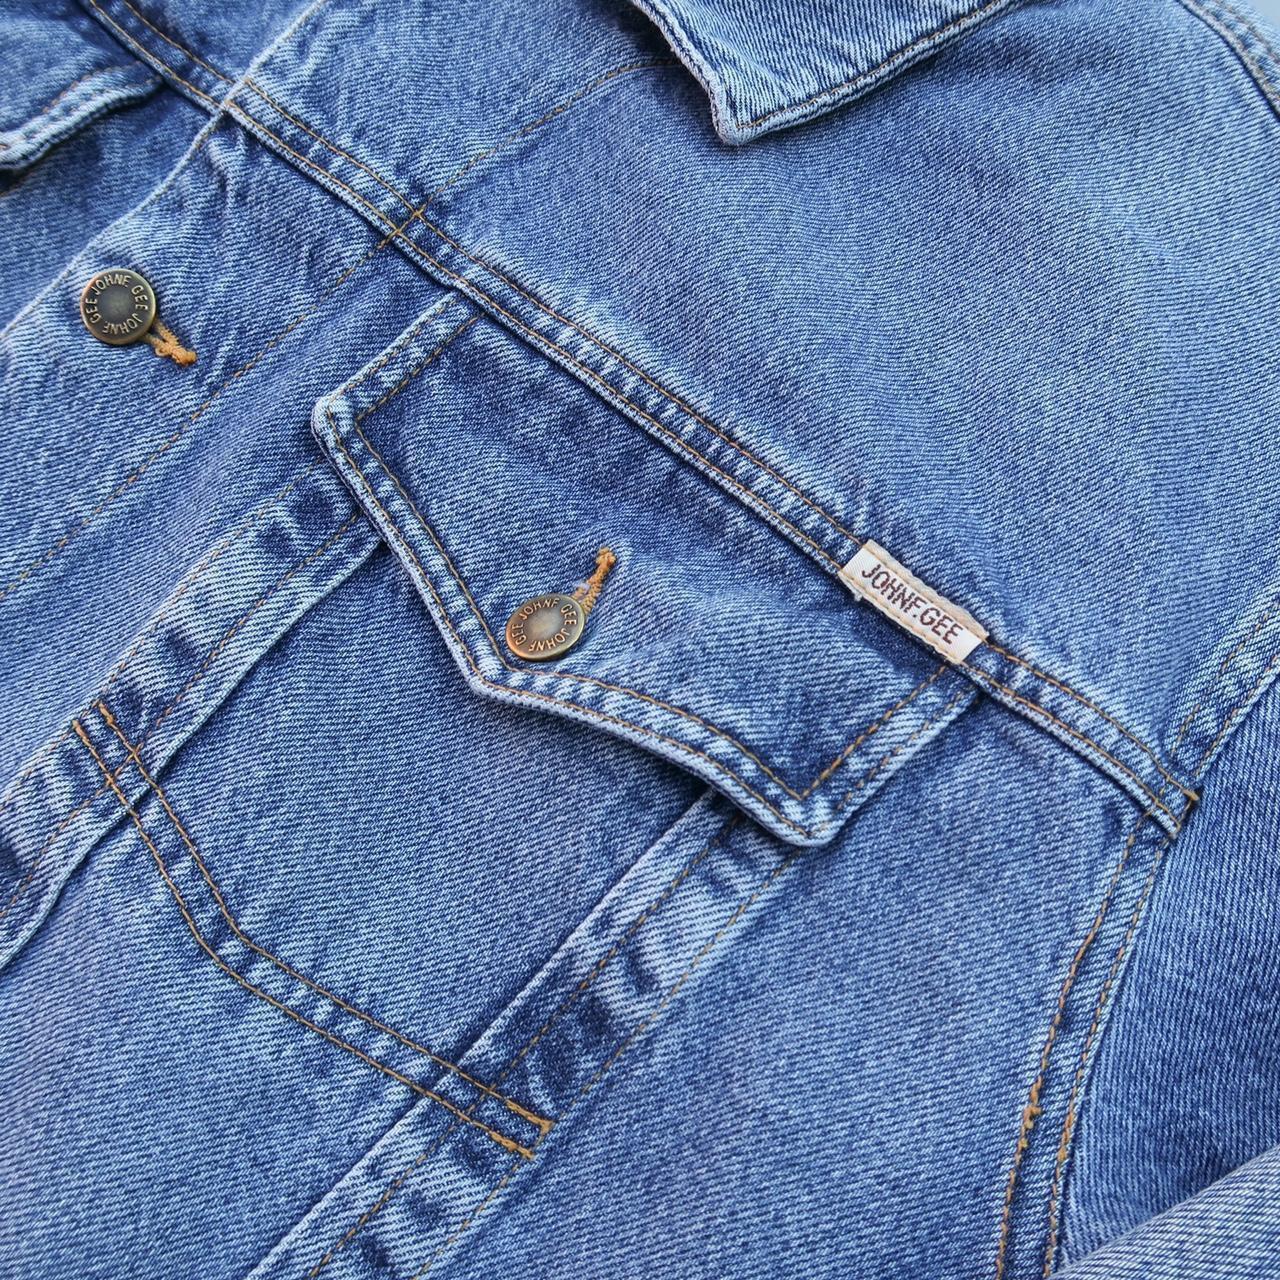 Vintage denim jacket - 90s - blue - XL Brande John... - Depop